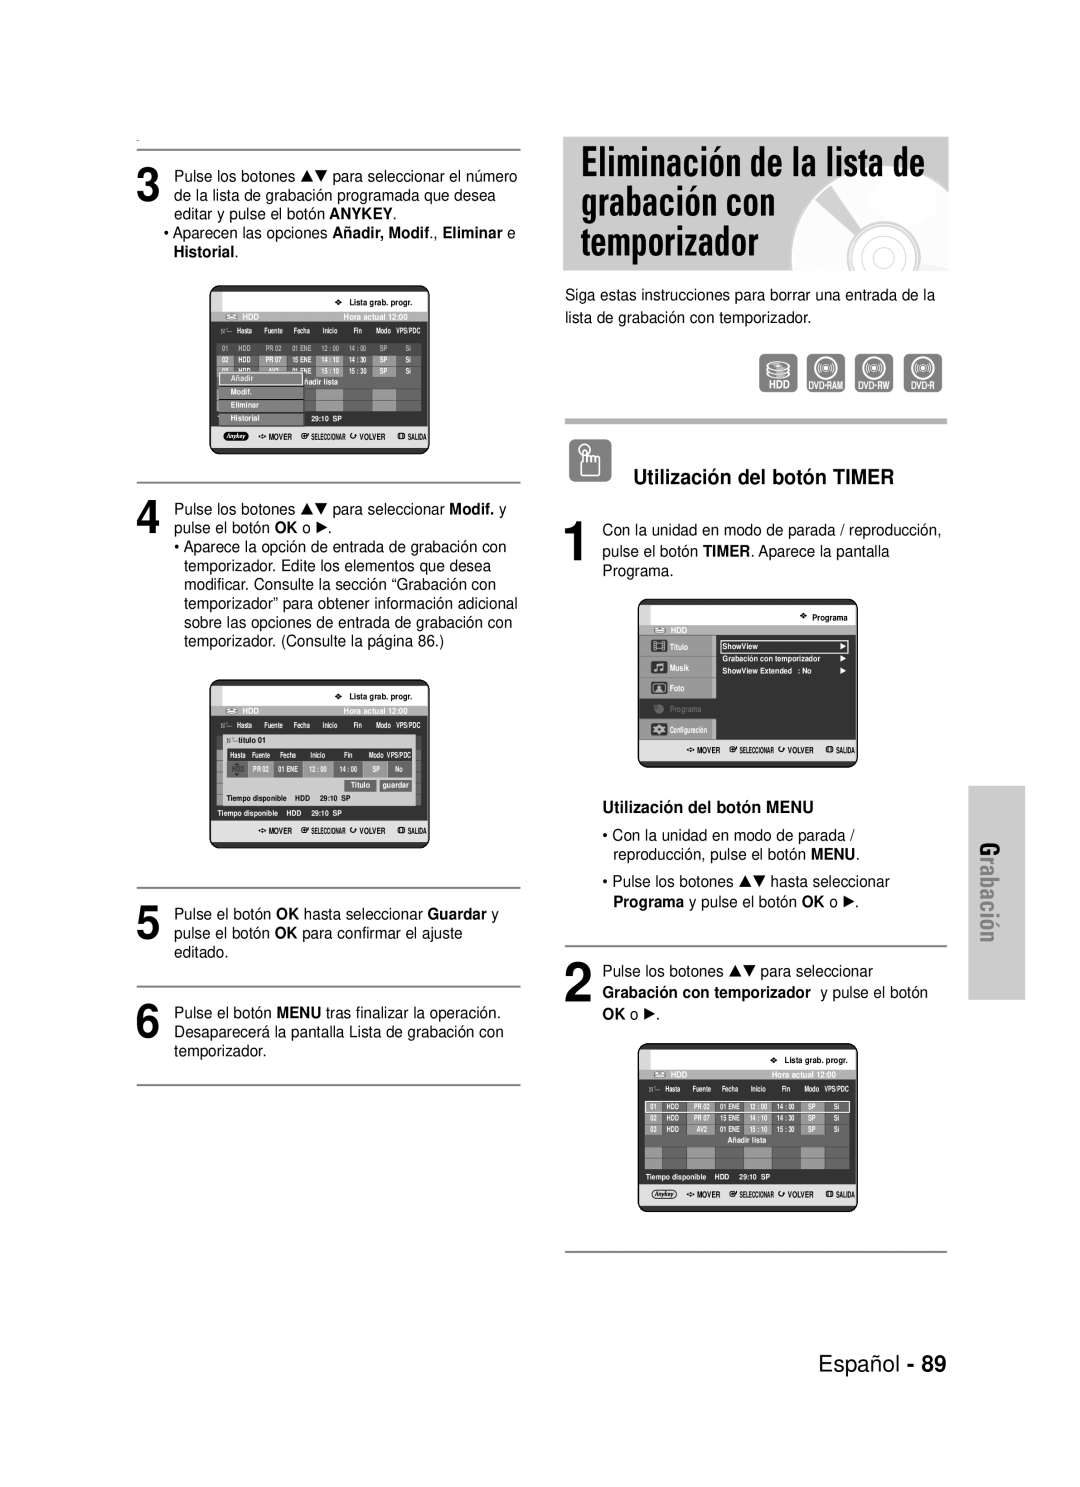 Samsung DVD-HR725/XEO, DVD-HR725/XEG Eliminación de la lista de grabación con temporizador, Grabación, Español, OK o √ 